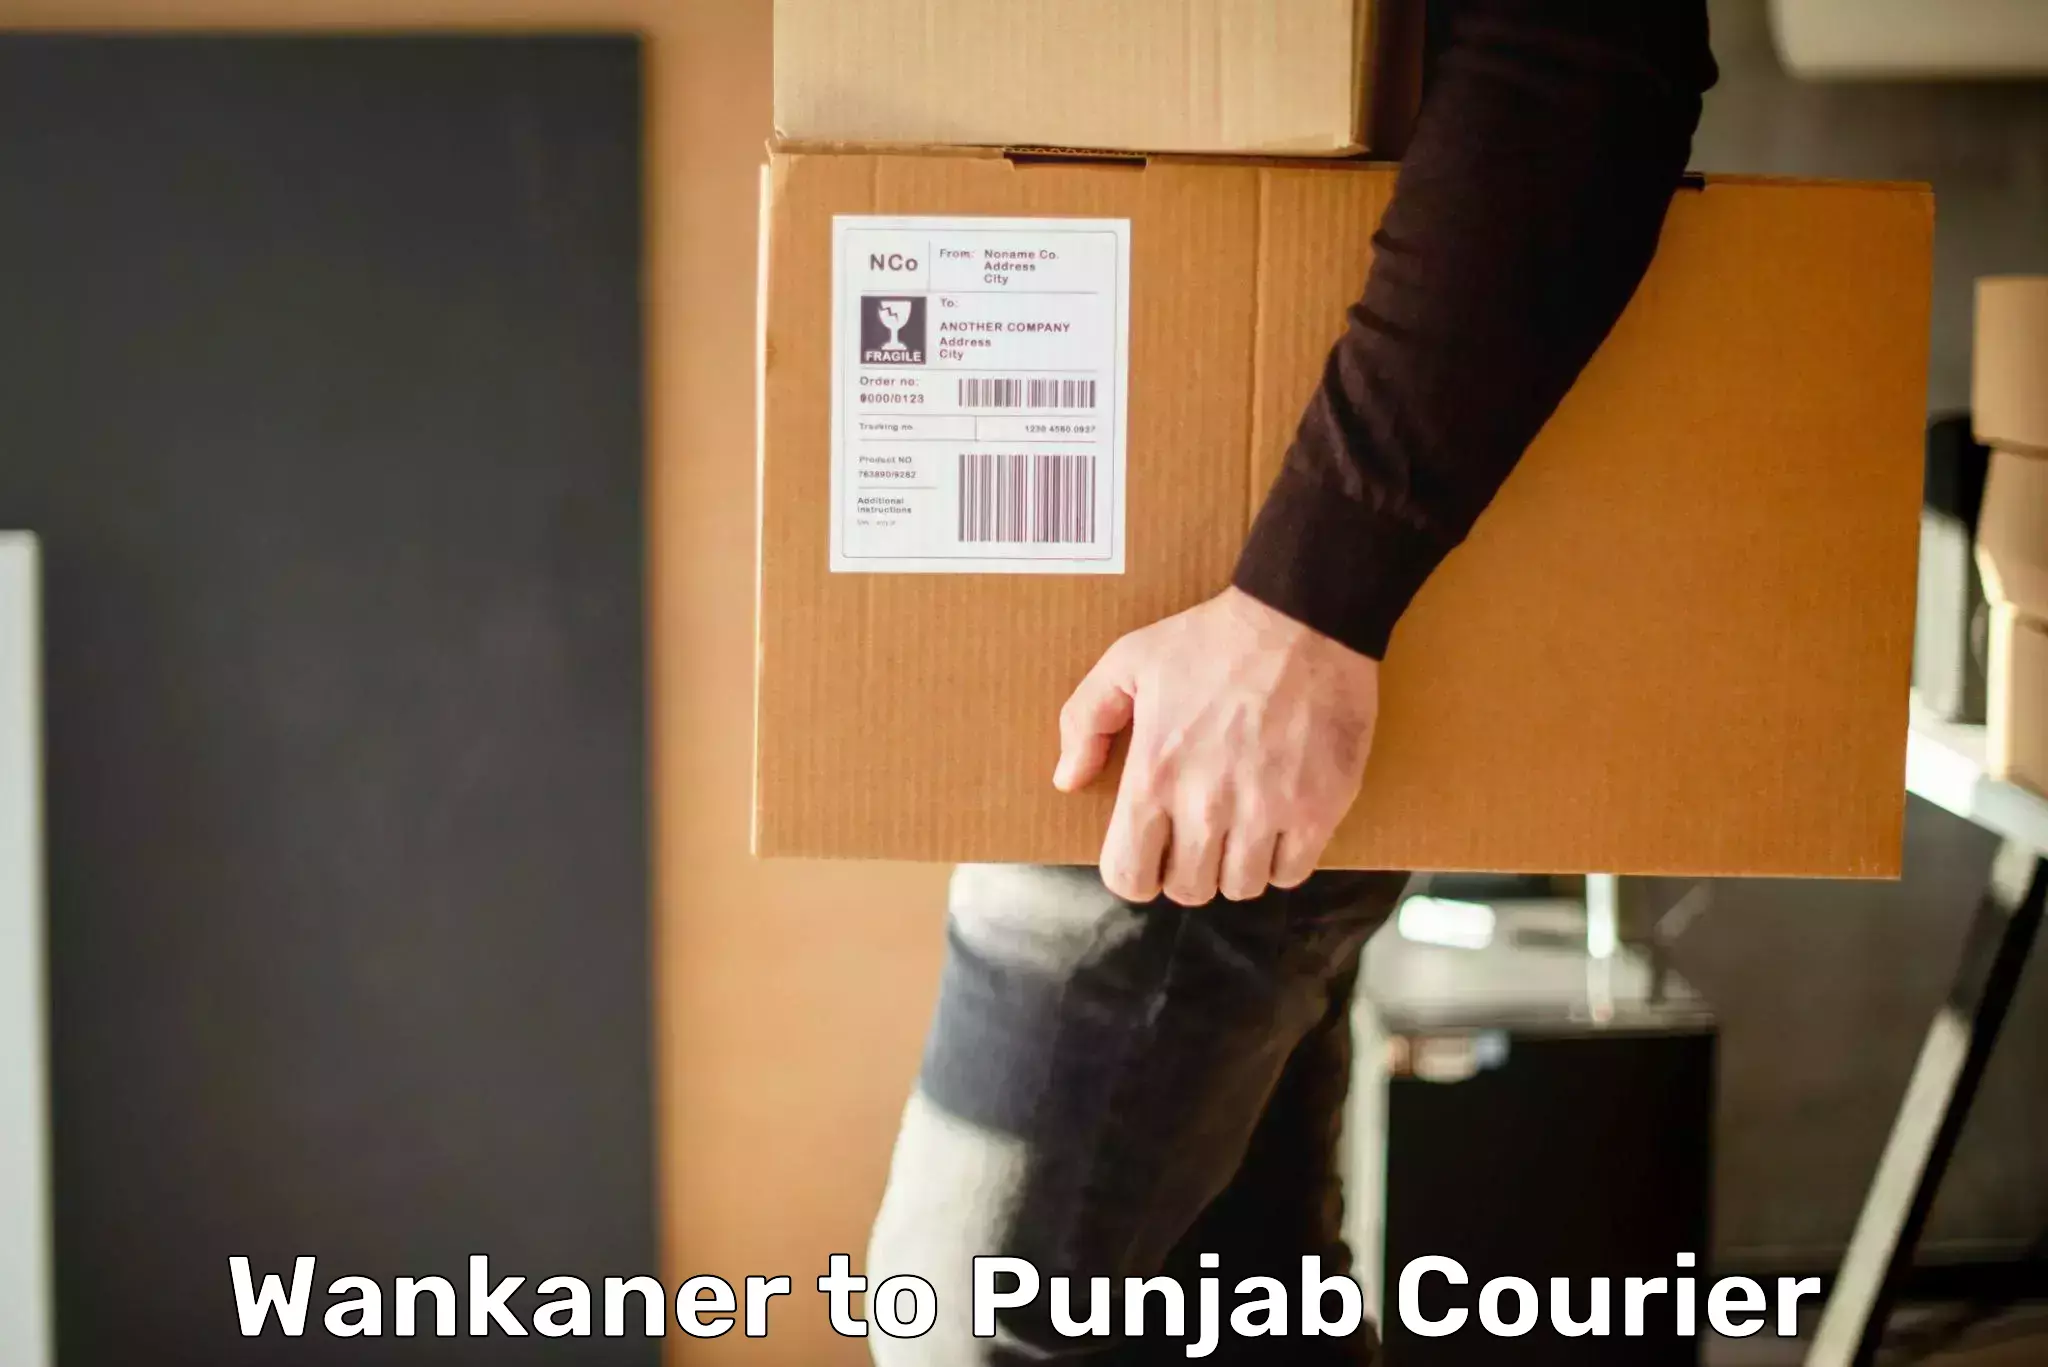 Express mail service Wankaner to Punjab